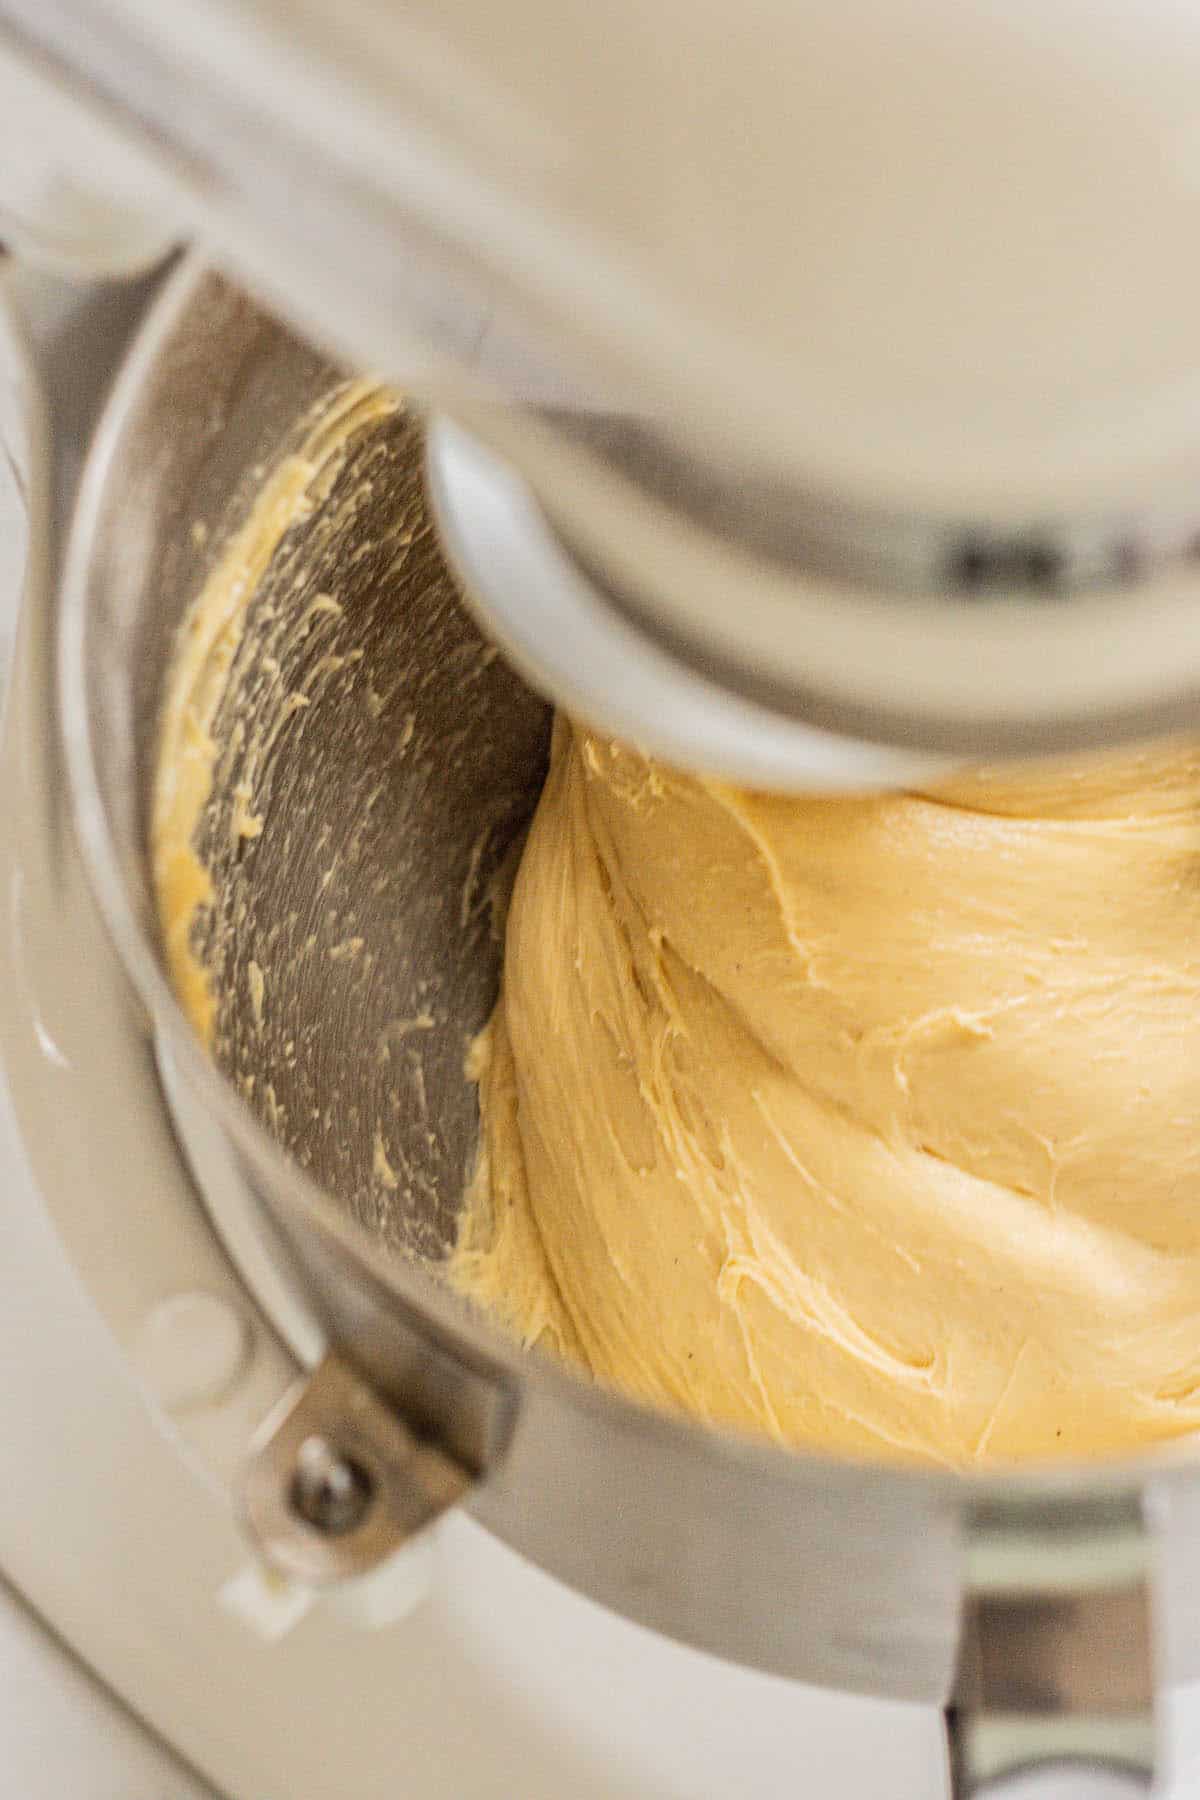 babka dough in mixer.